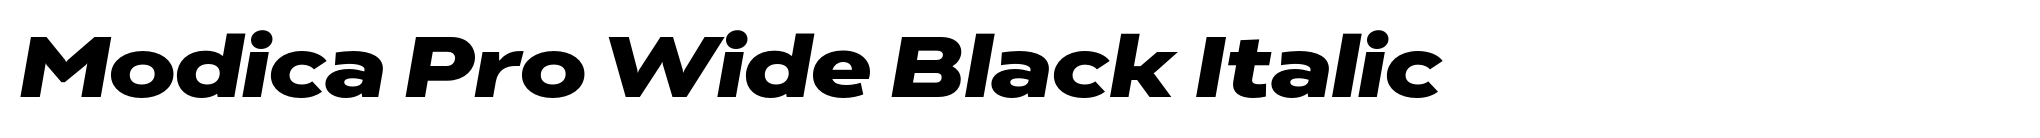 Modica Pro Wide Black Italic image